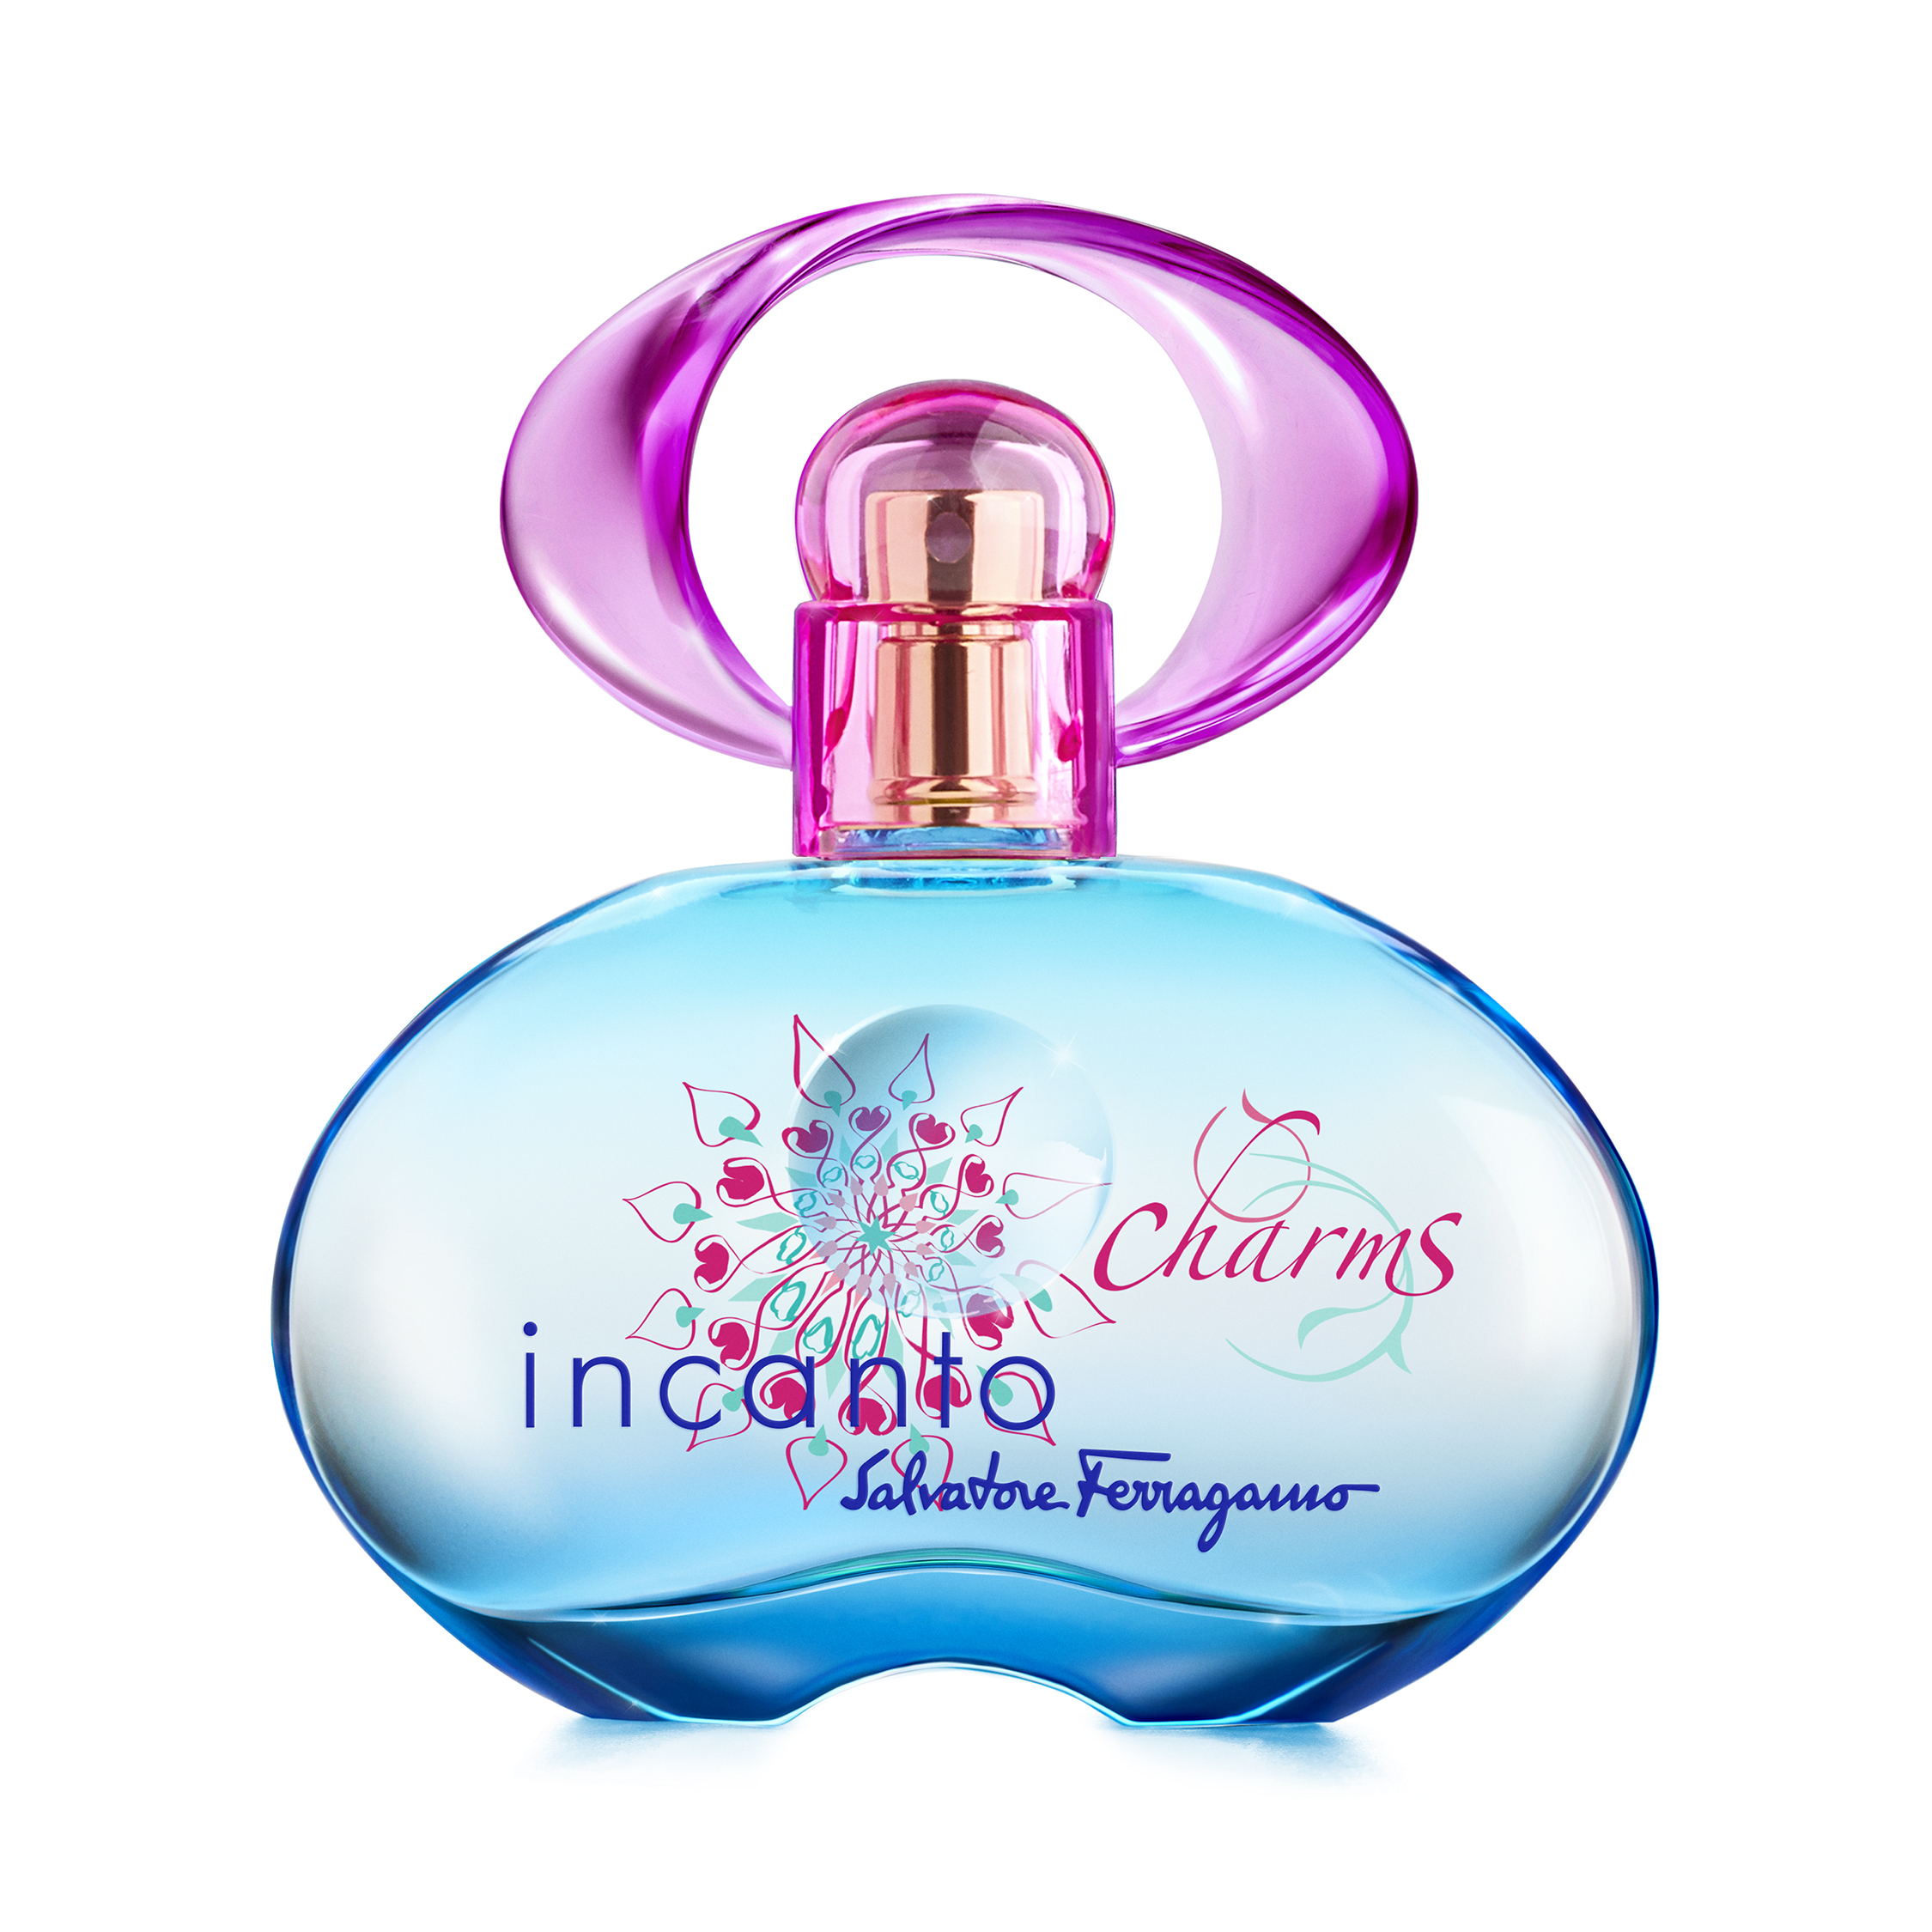 Salvatore Ferragamo Incanto Charms EDT 100ml - Nước hoa chính hãng 100% nhập khẩu Pháp, Mỹ…Giá tốt tại Perfume168